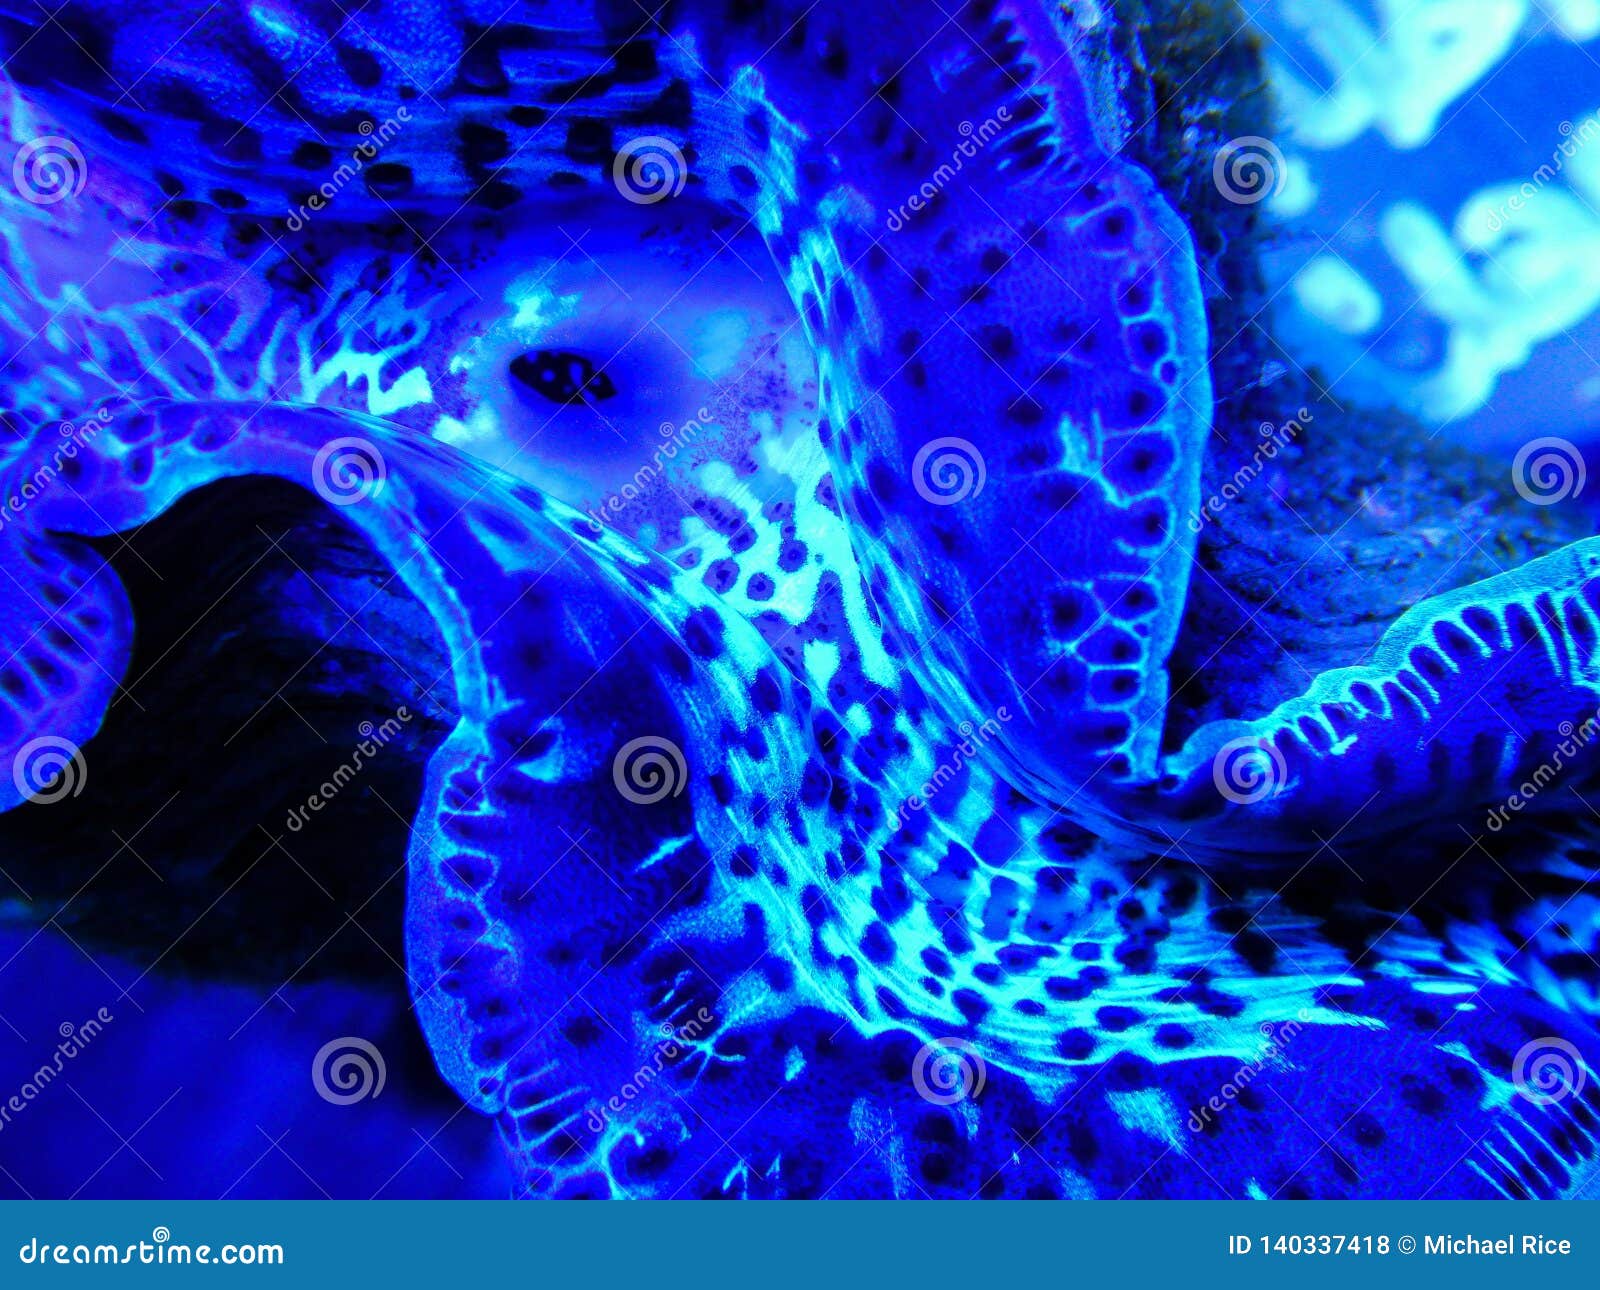 blue maxima clam underwater